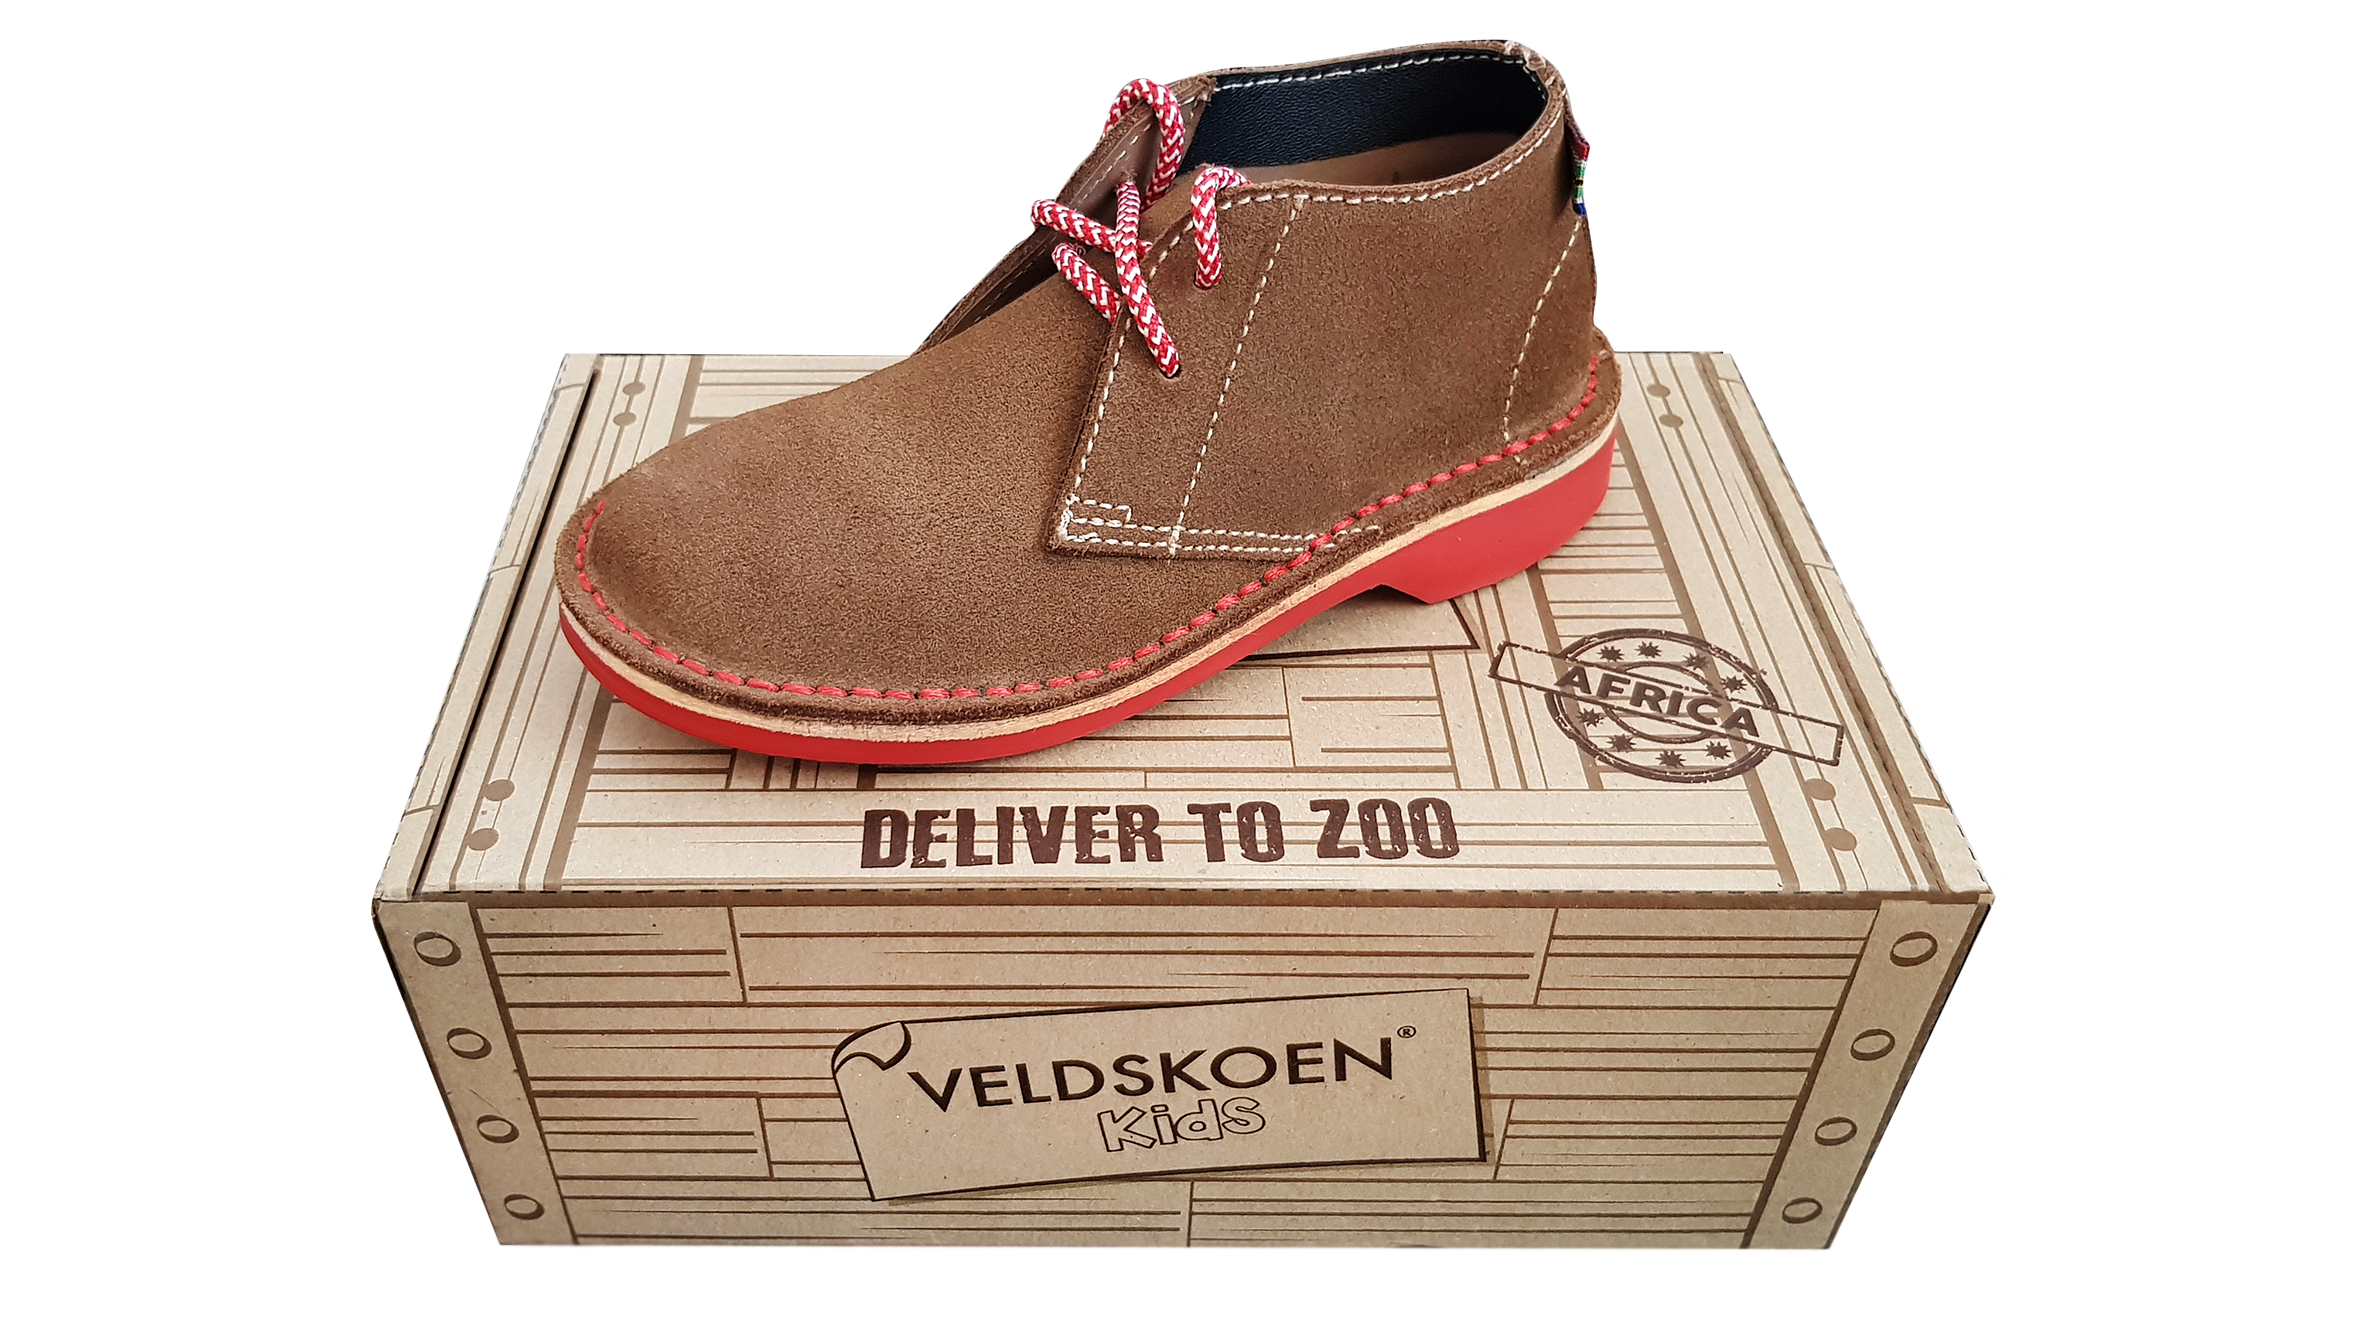 Win Veldskoen Kids shoes